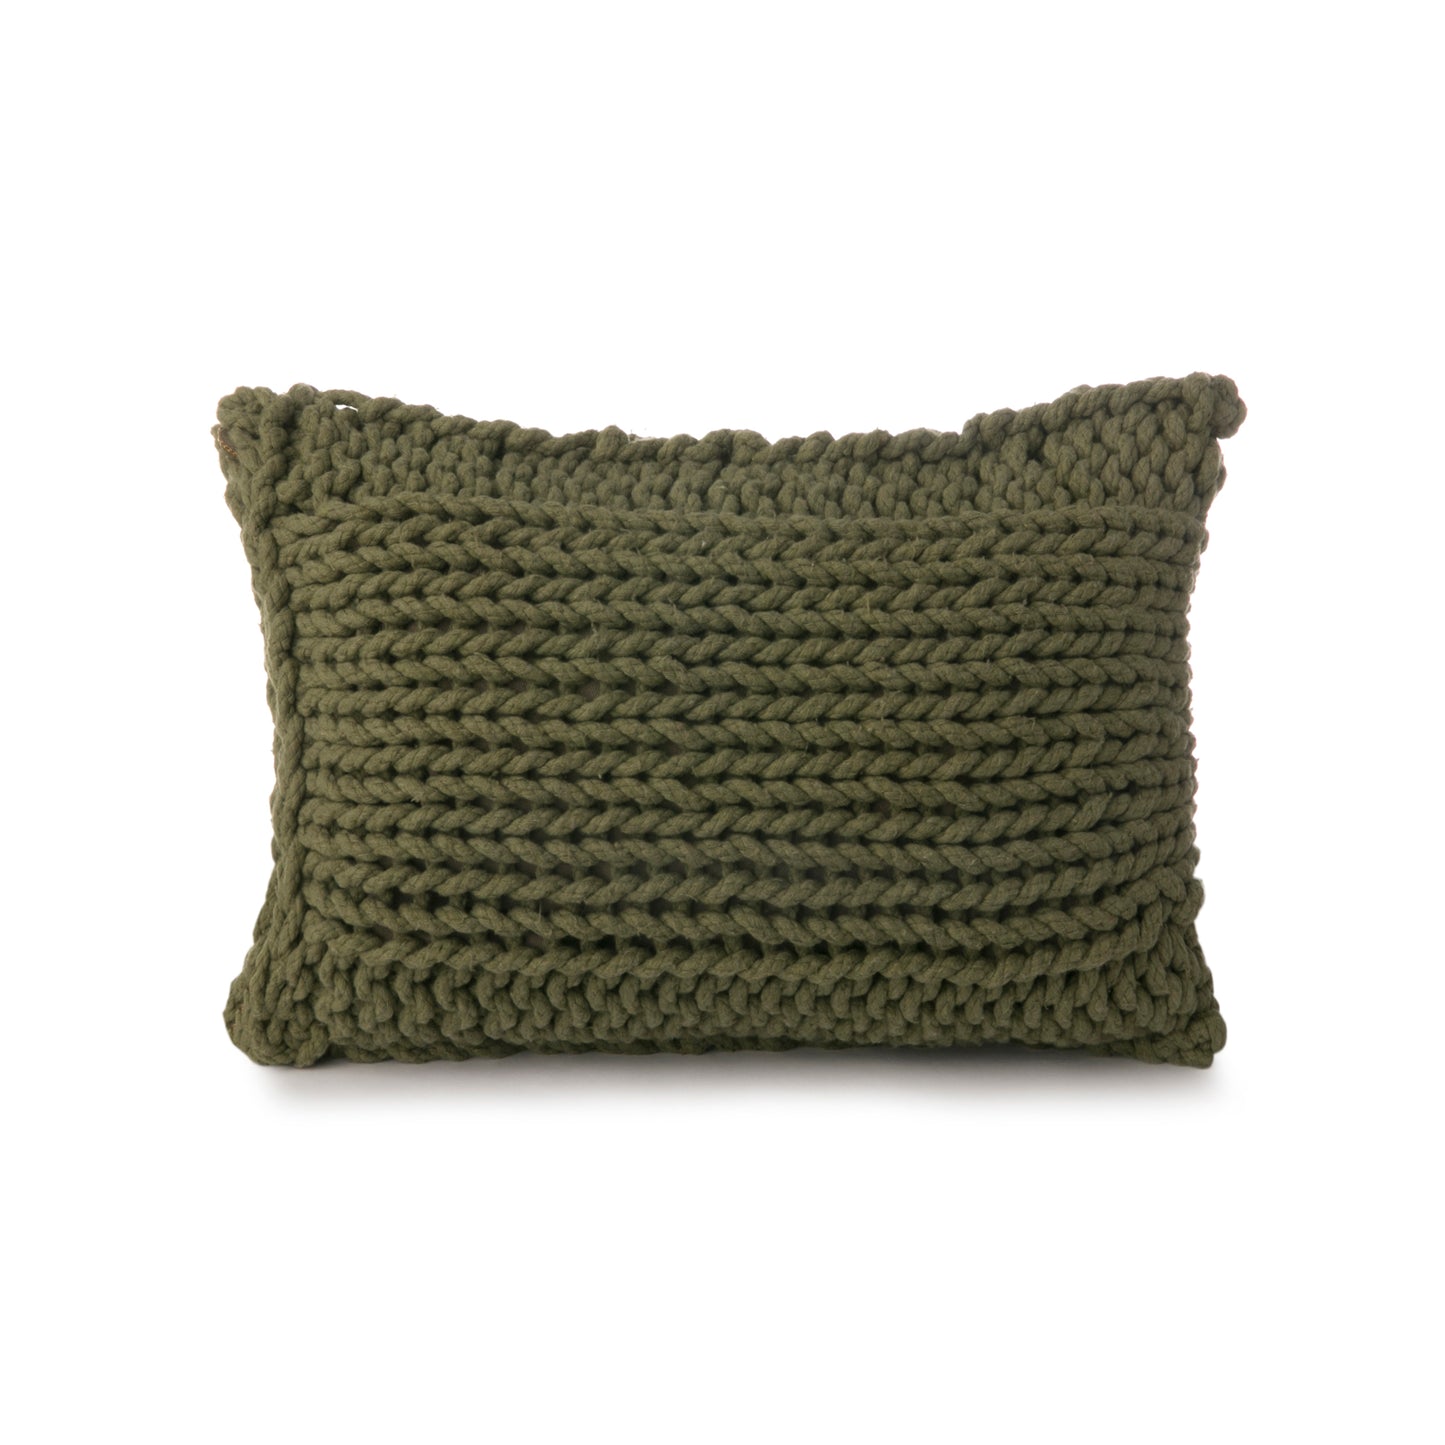 Almofada em tricô artesanal Verde, frente e verso, com fio 100% algodão. Fechamento com zíper, possibilitando a remoção da capa para lavagem. Dimensões: Altura - 30cm; Largura - 45cm. 